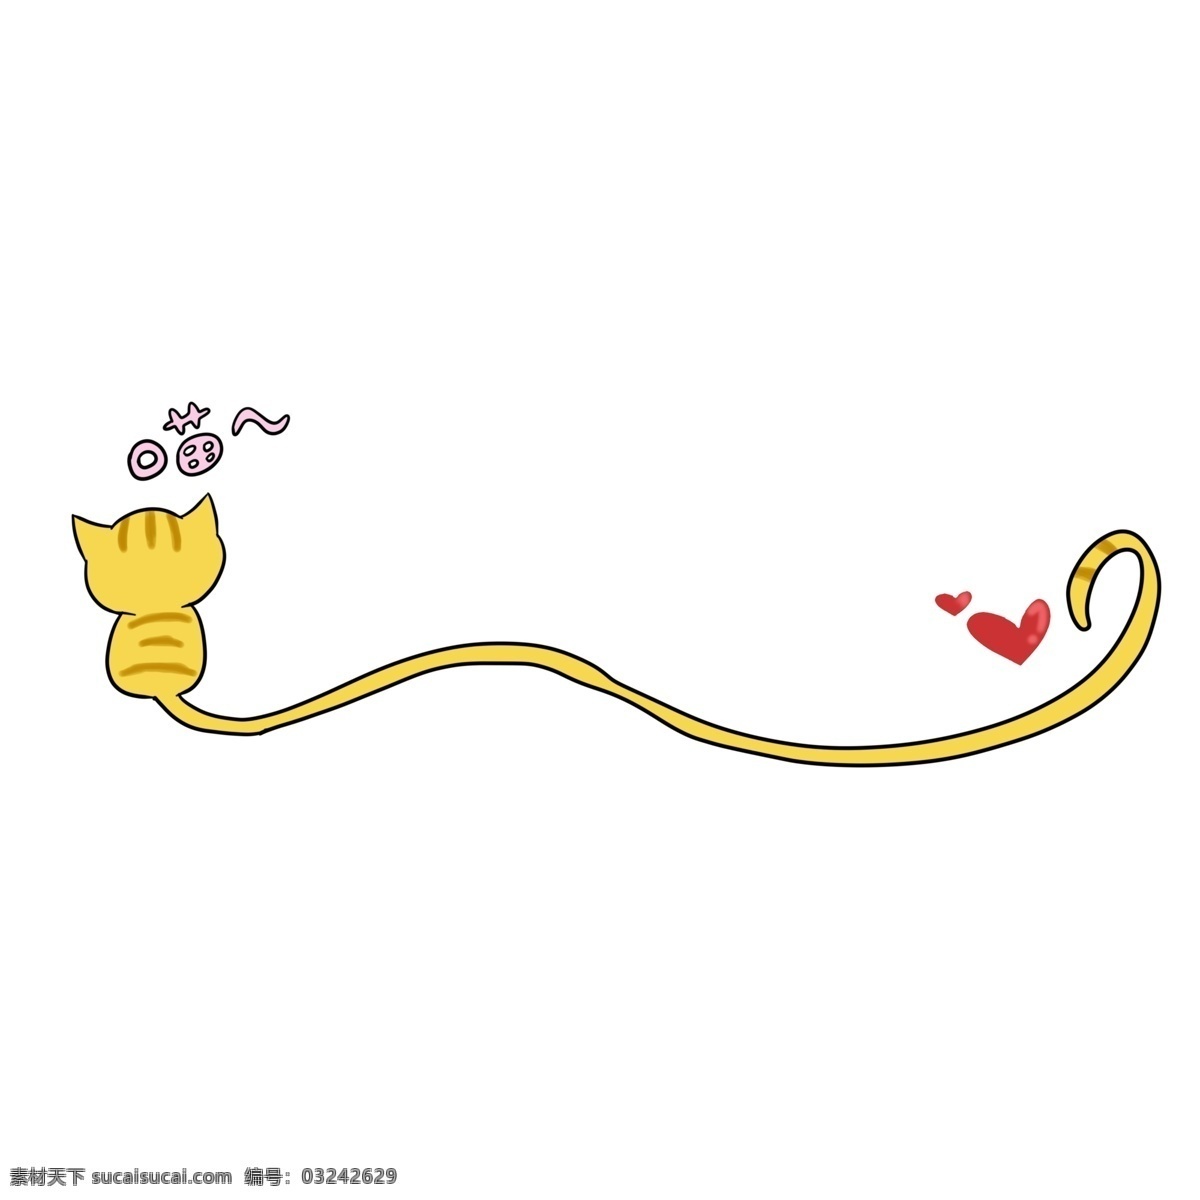 黄色 猫咪 分割线 装饰 黄色的猫咪 小动物分割线 分割线装饰 猫尾巴分割线 红心装饰 猫叫 创意分割线